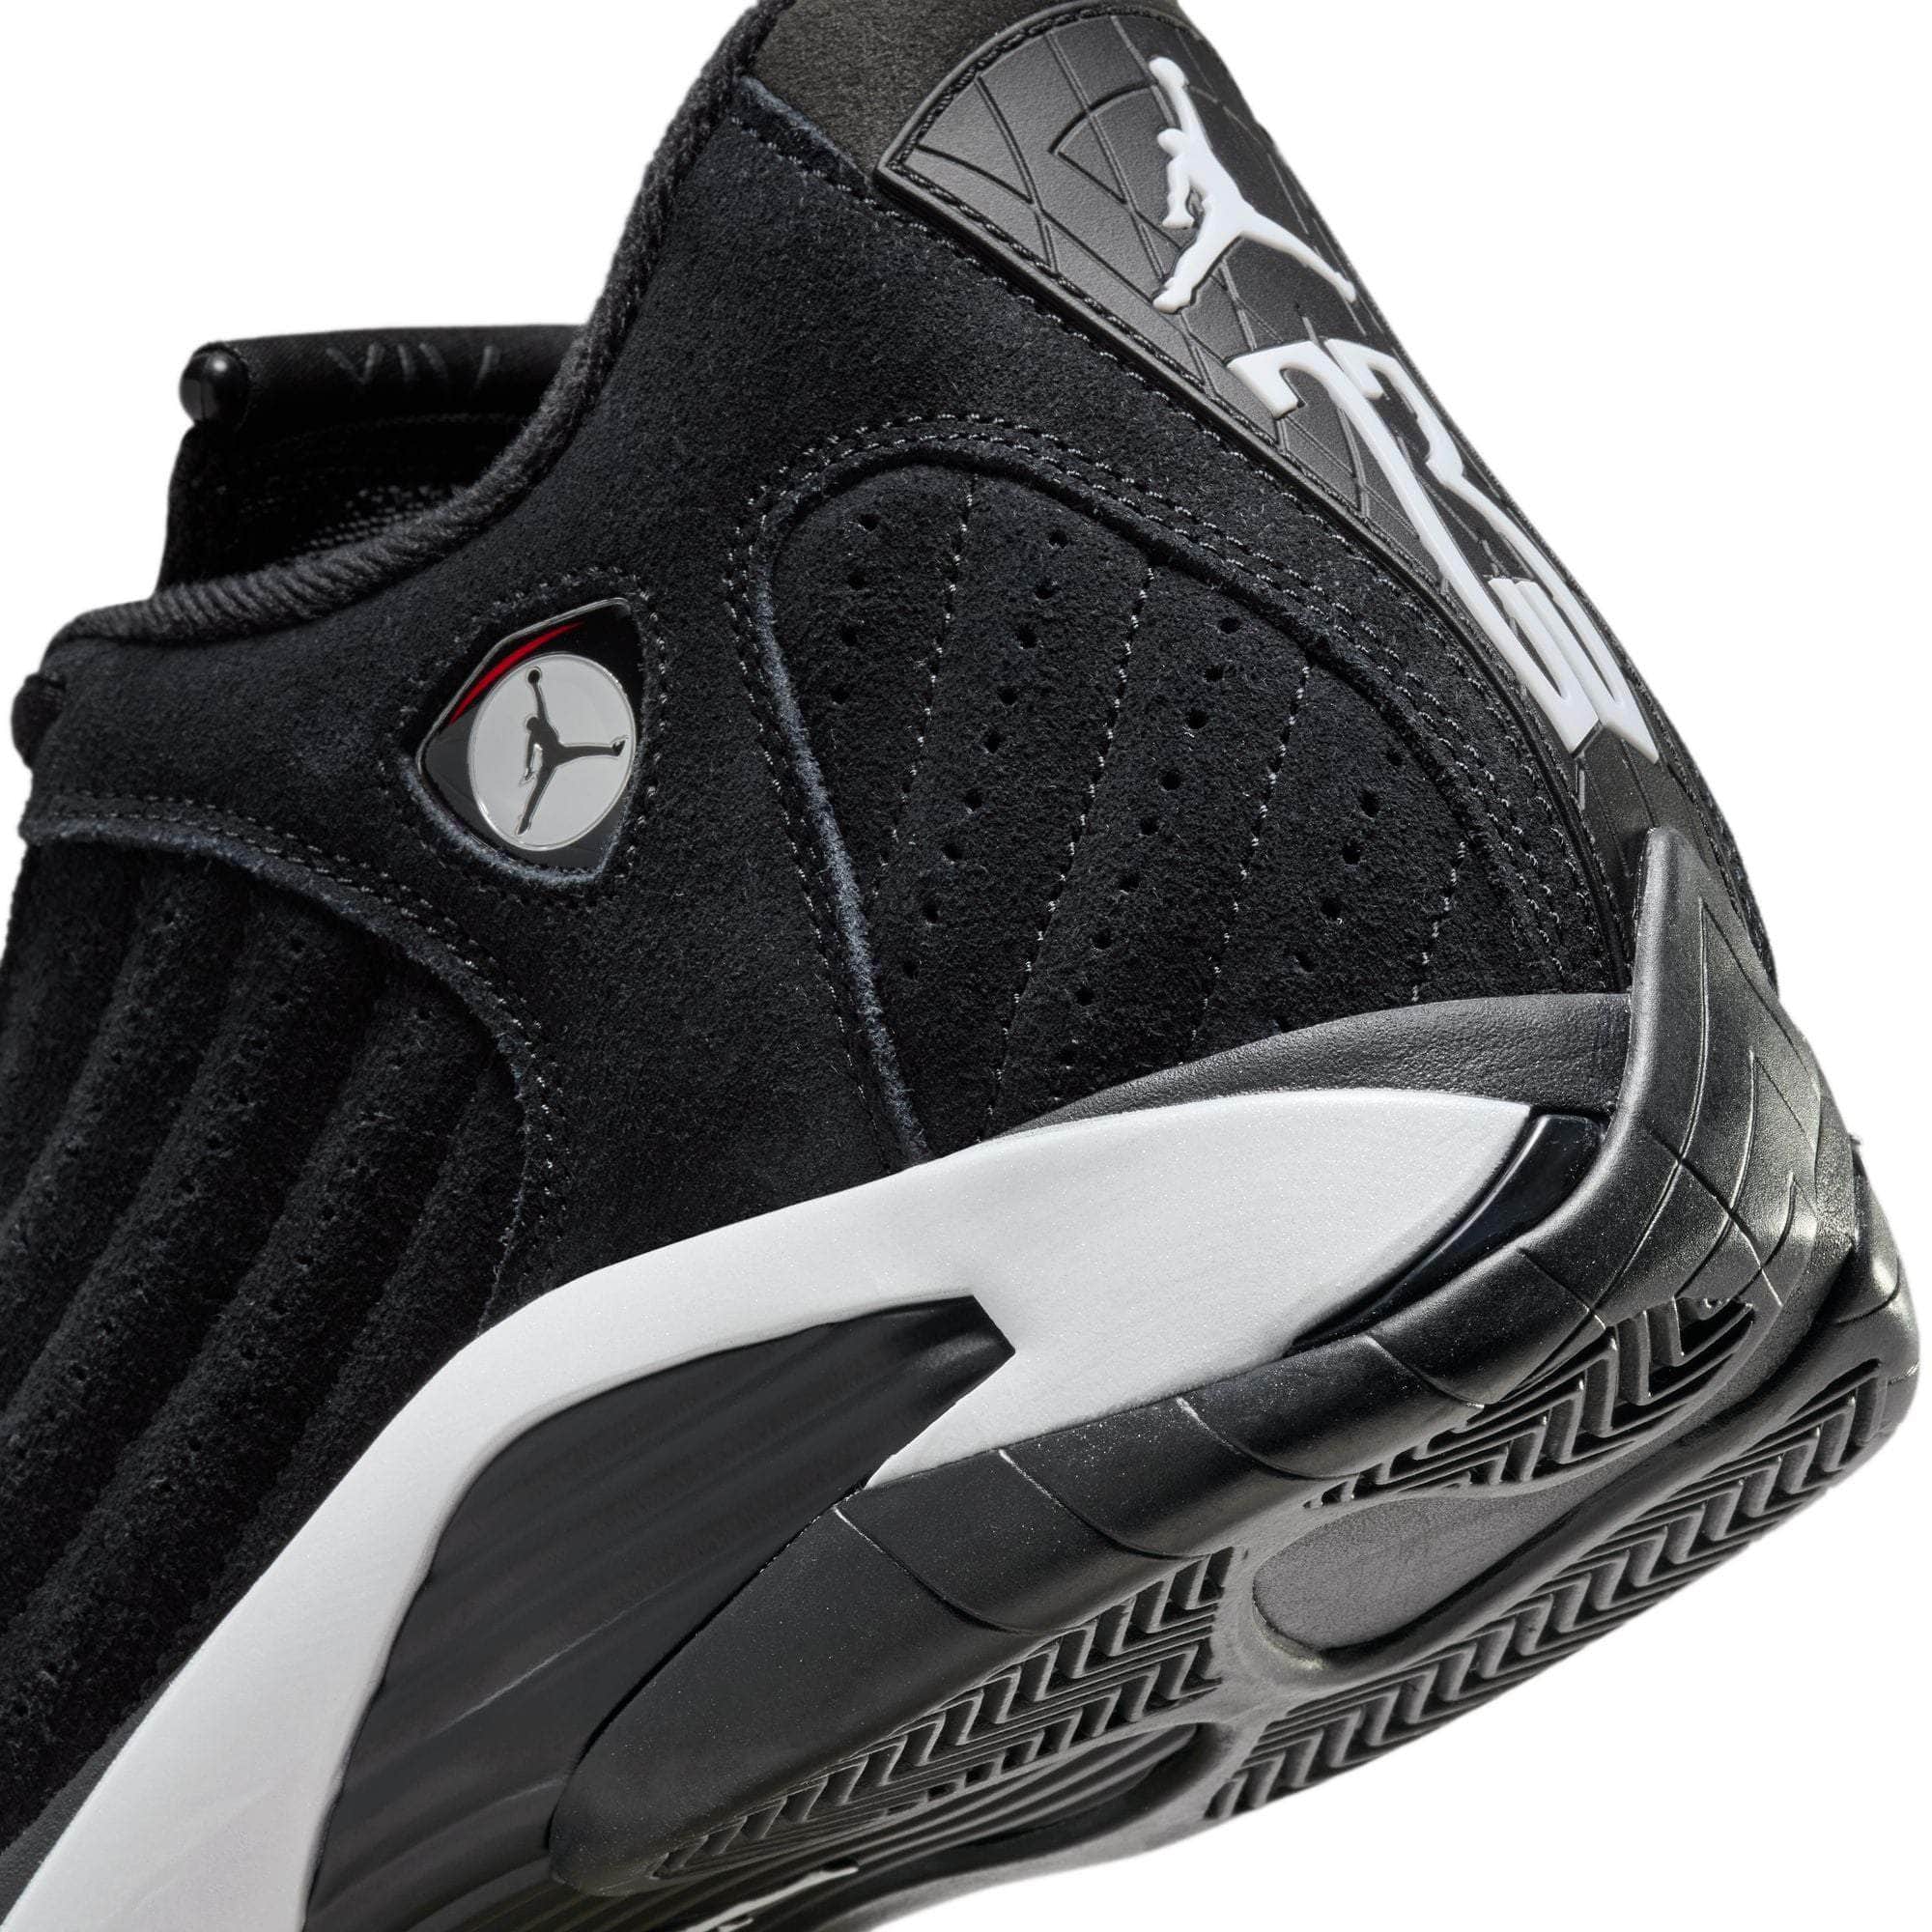 Air Jordan FOOTWEAR Air Jordan 14 Retro "Black White" - Men's